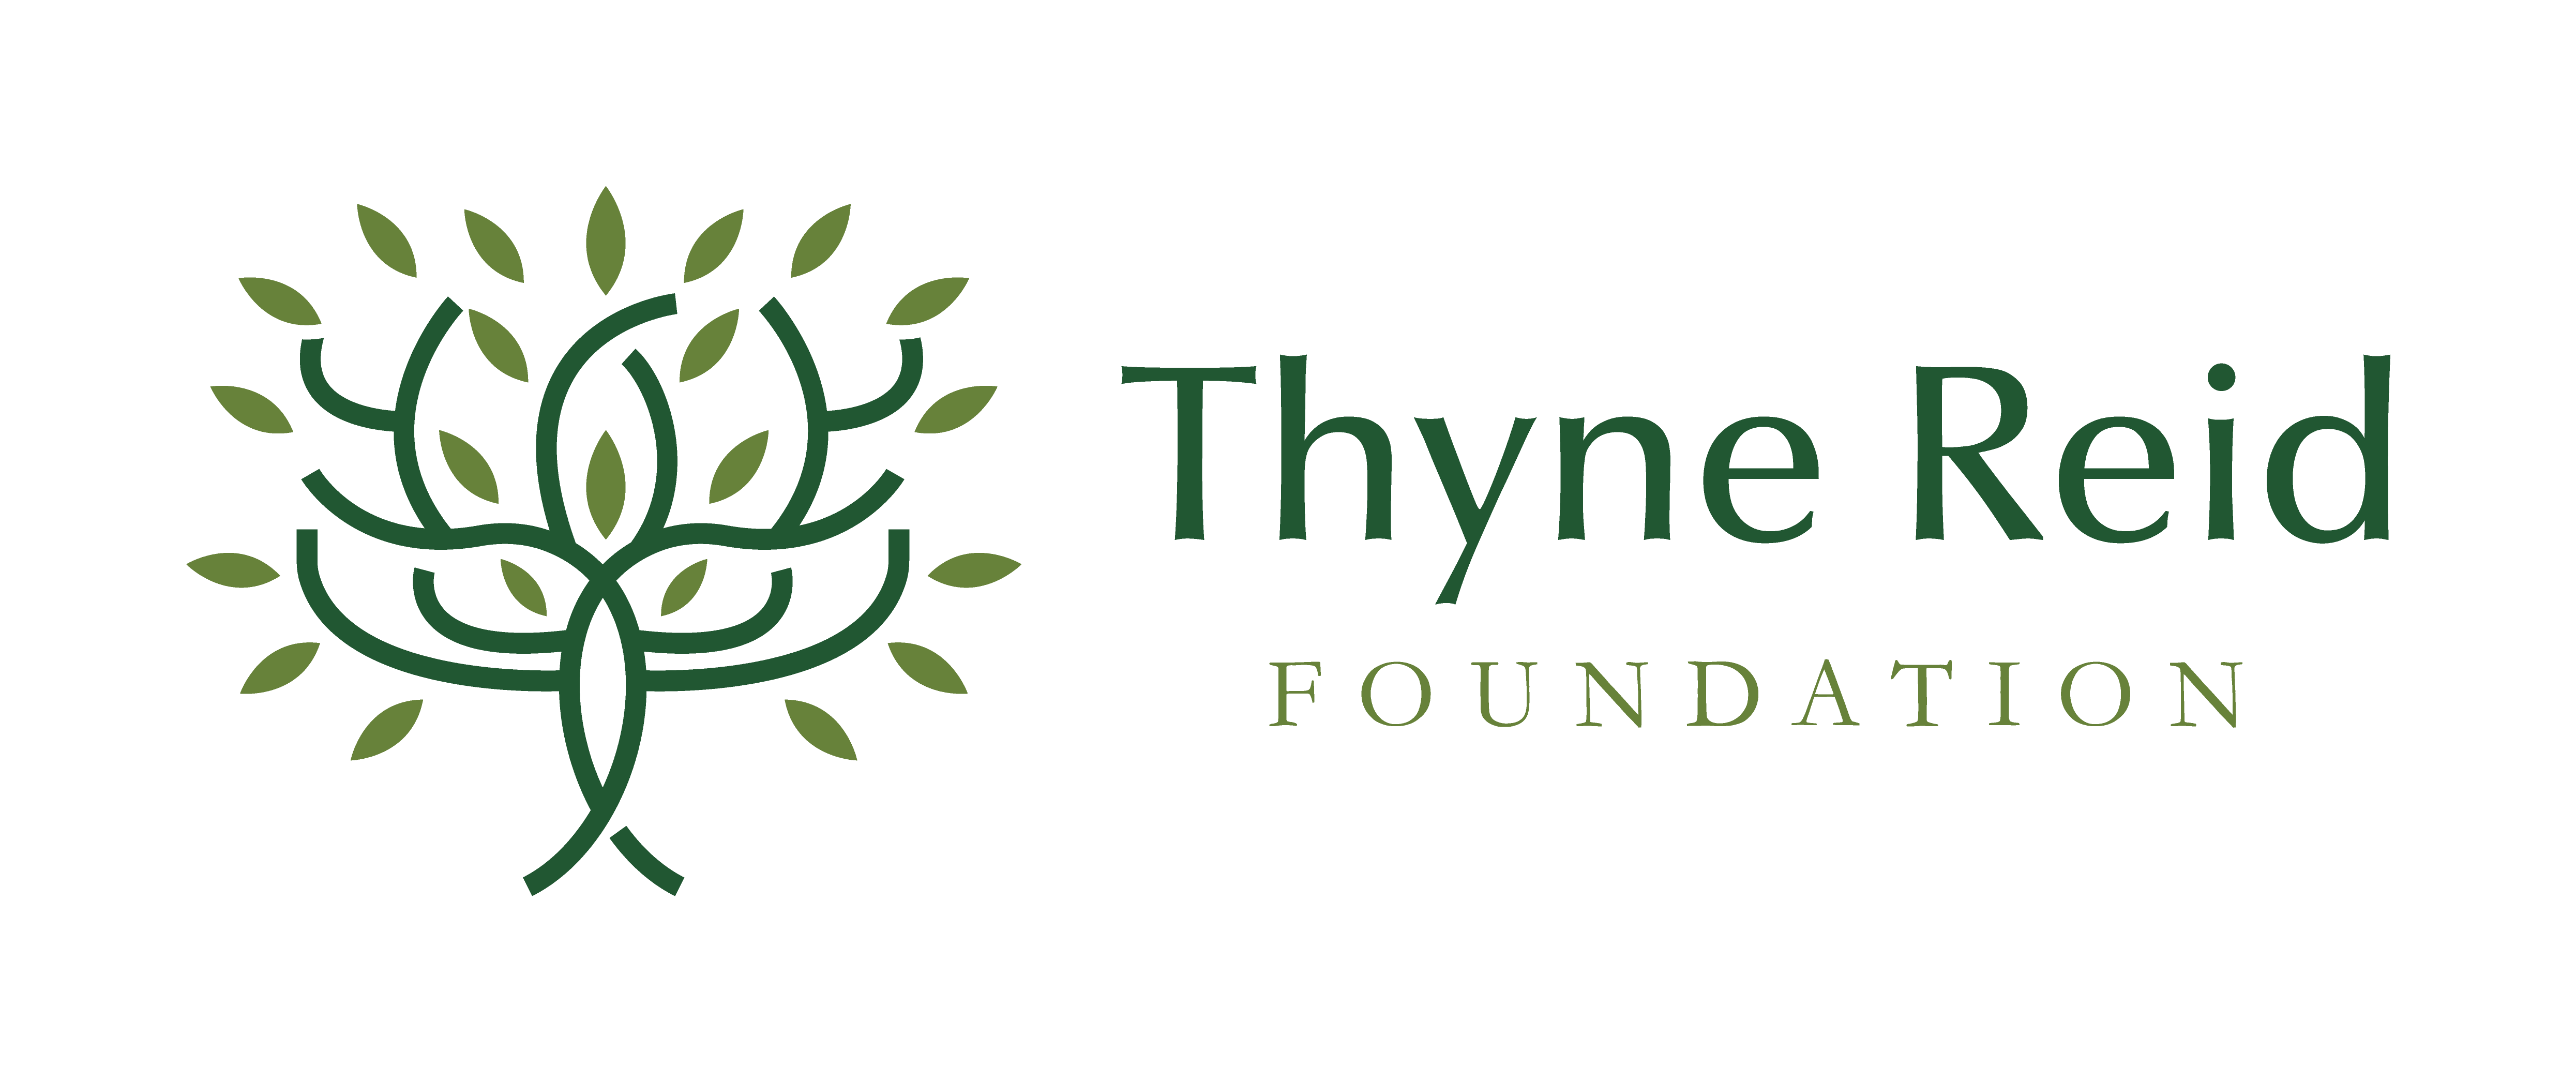 Thyne Reid Foundation - logo